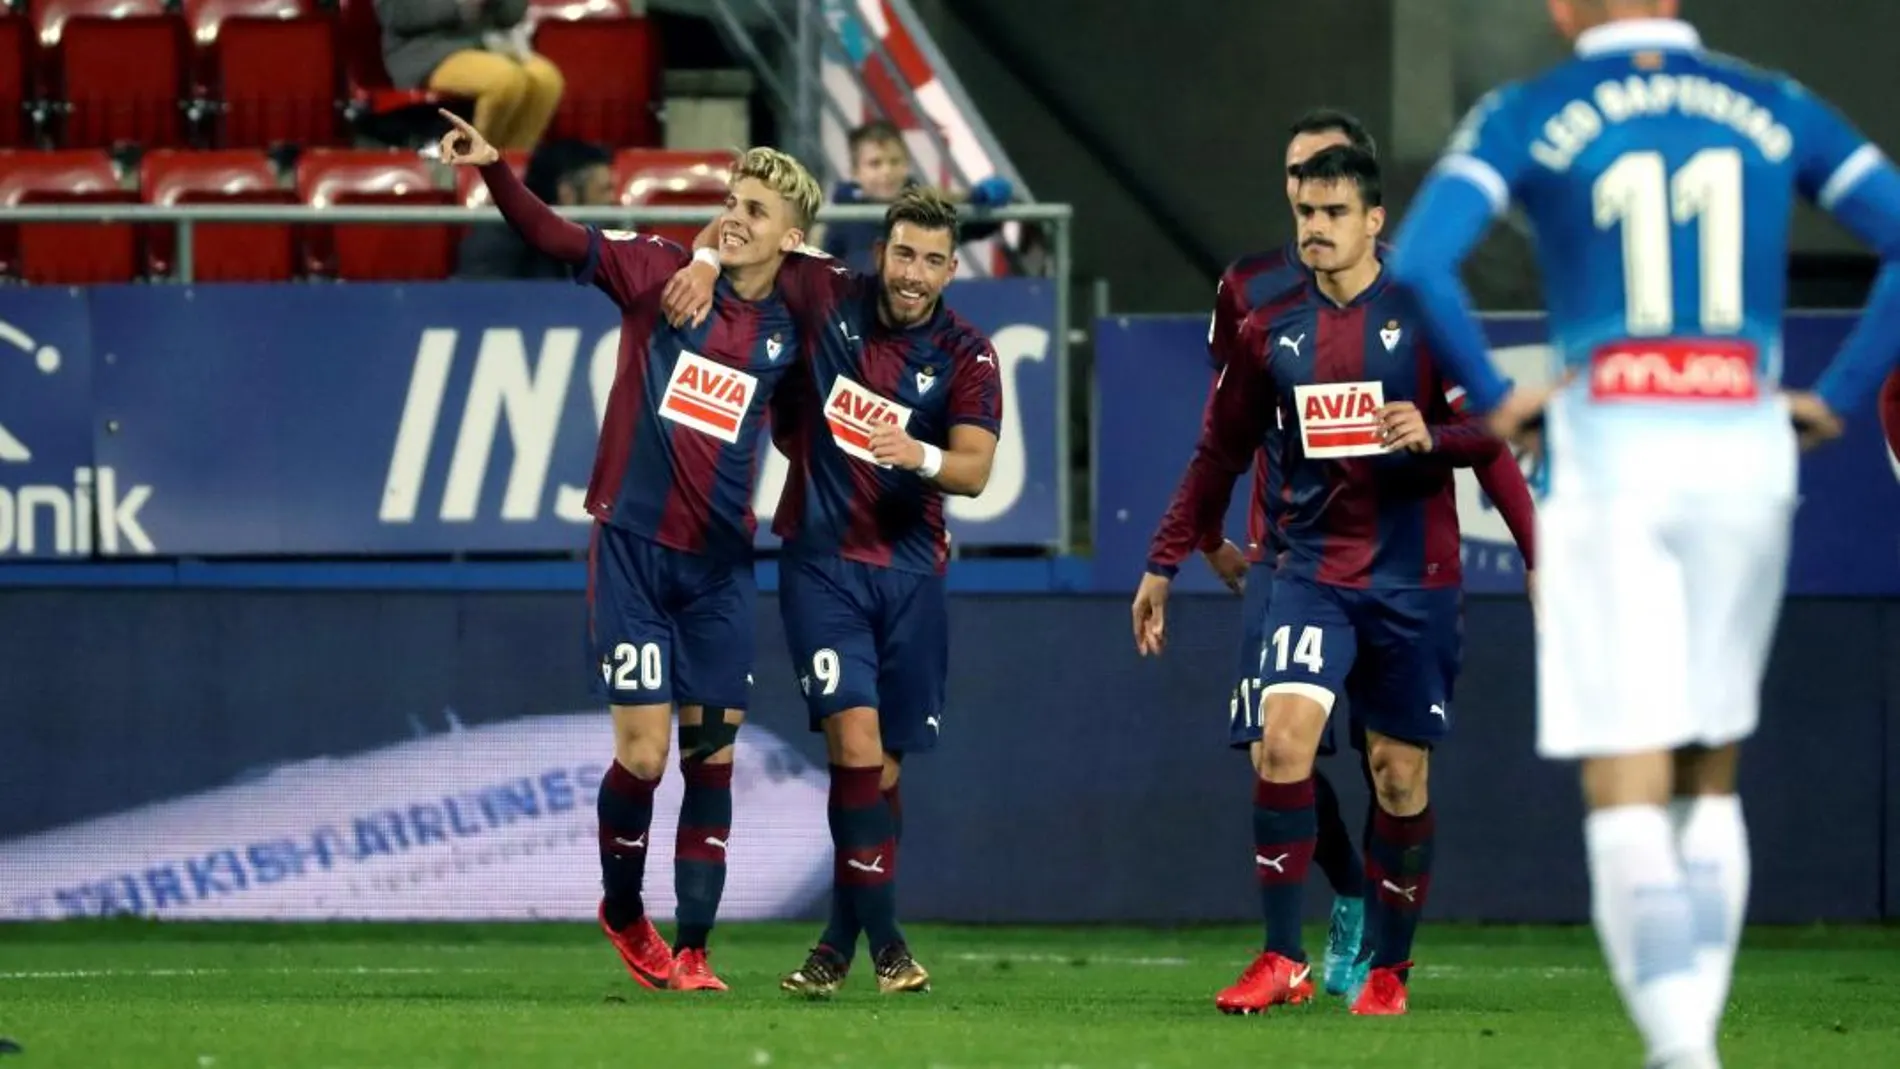 El centrocampista del Eibar Iván Alejo celebra con sus compañeros su gol, segundo del equipo ante el RCD Espanyol